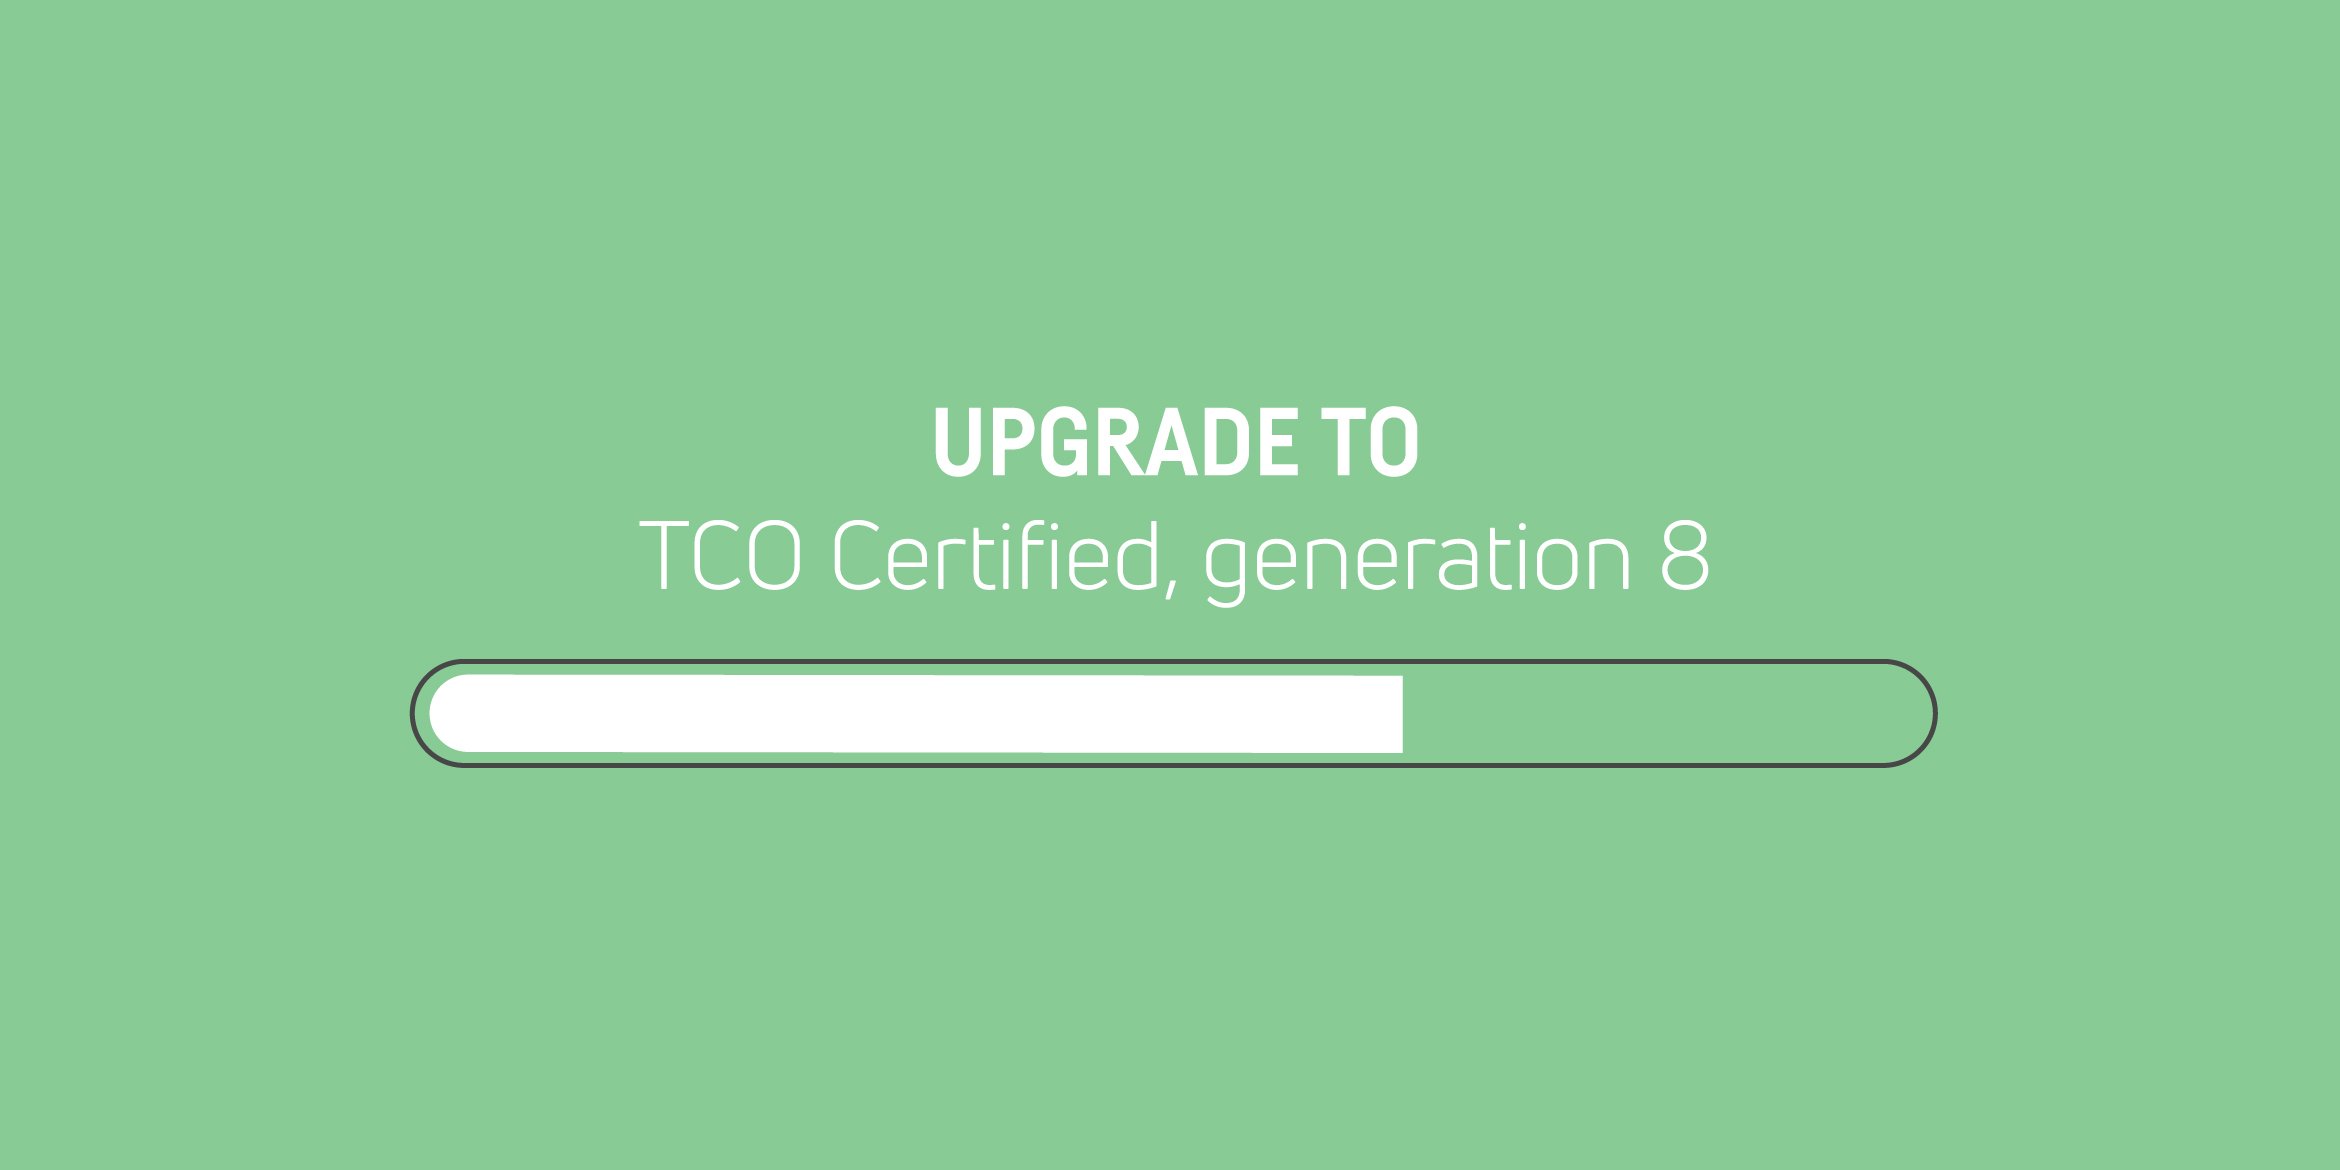 Den tidigare generationen av TCO Certified har utgått - uppgradera dina certifikat.